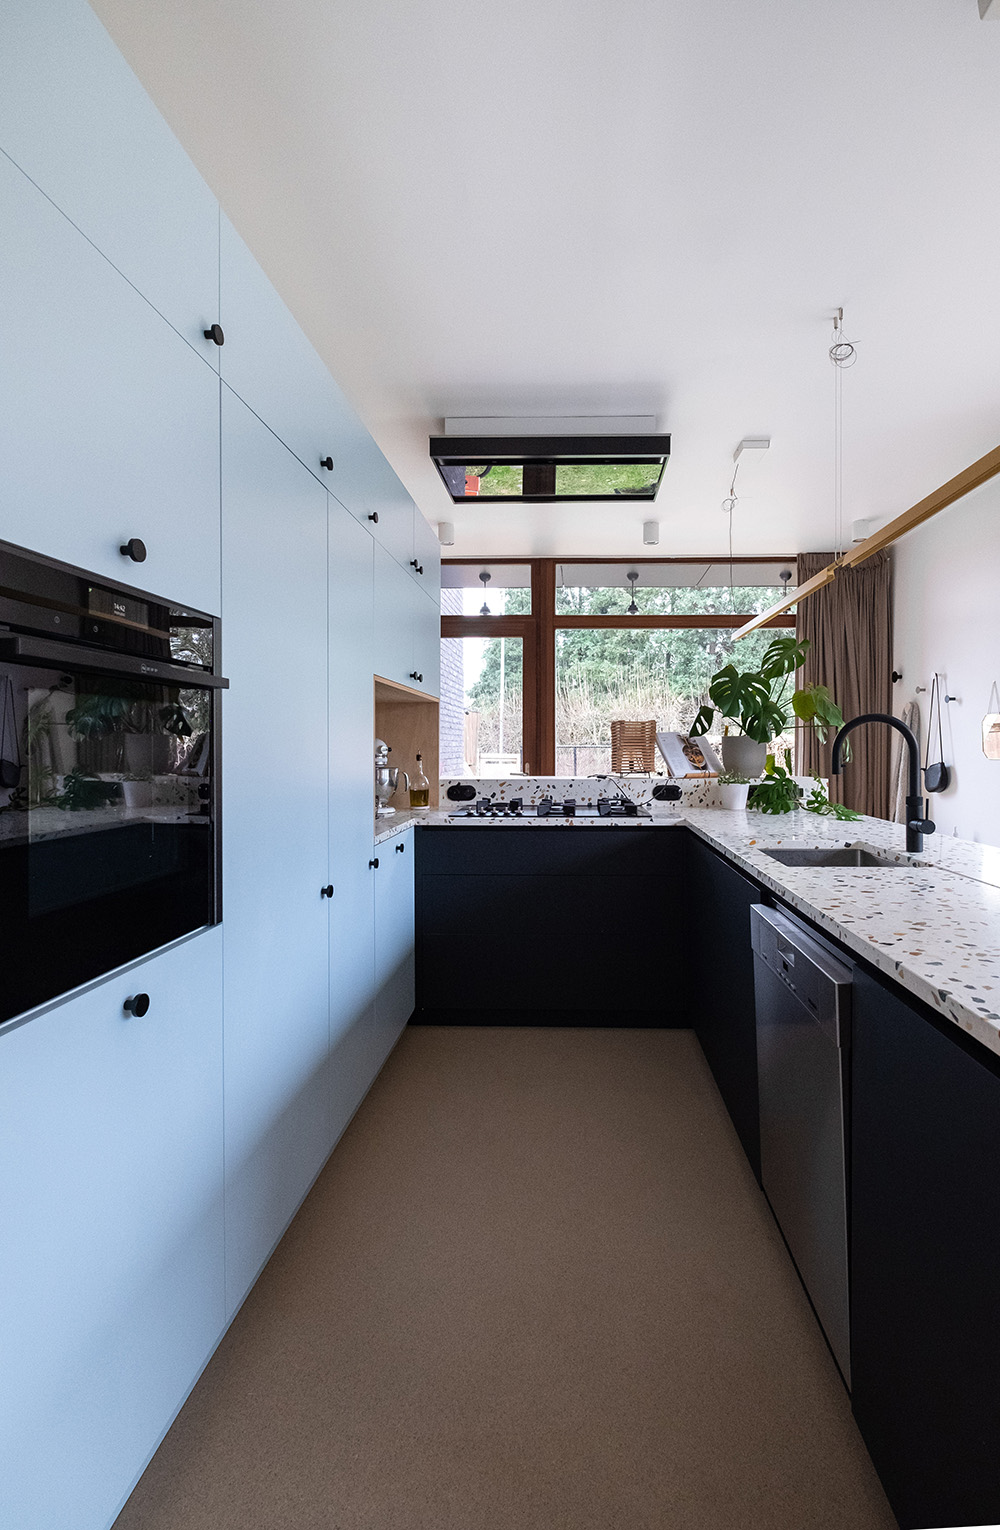 HB blauwe keuken en terrazzo werkblad